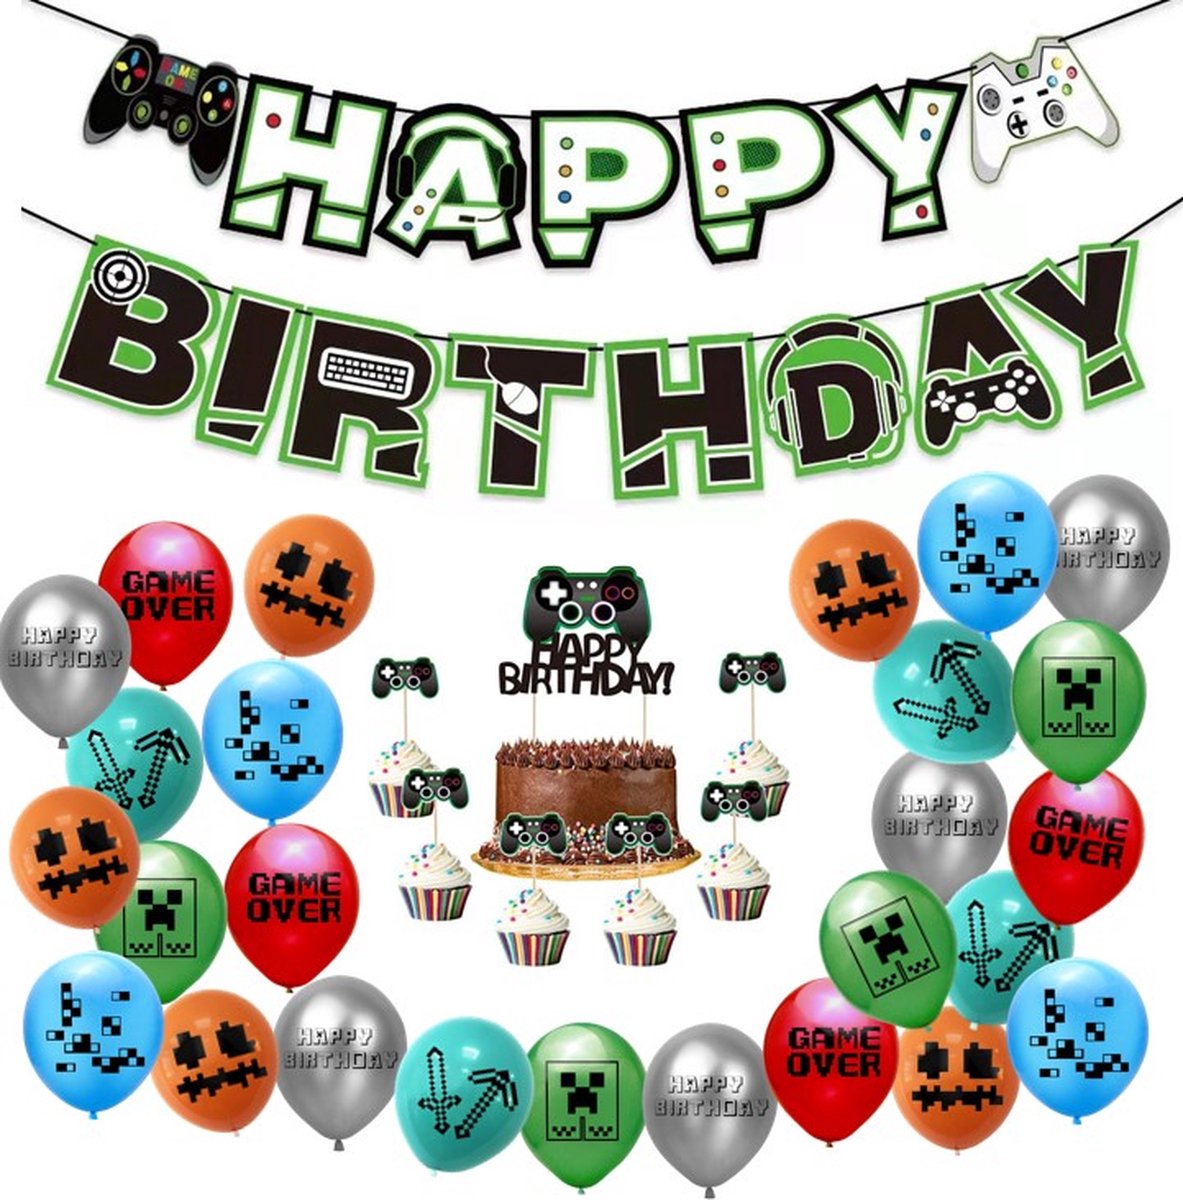 TripleAgoods 36 Stuks Pixel Video Game Verjaardag Versiering – Thema Decoratie – Verjaardag versiering voor kinderfeestjes - Decoratie voor verjaardag - Ballonnen/Slingers/Caketoppers - Merkloos